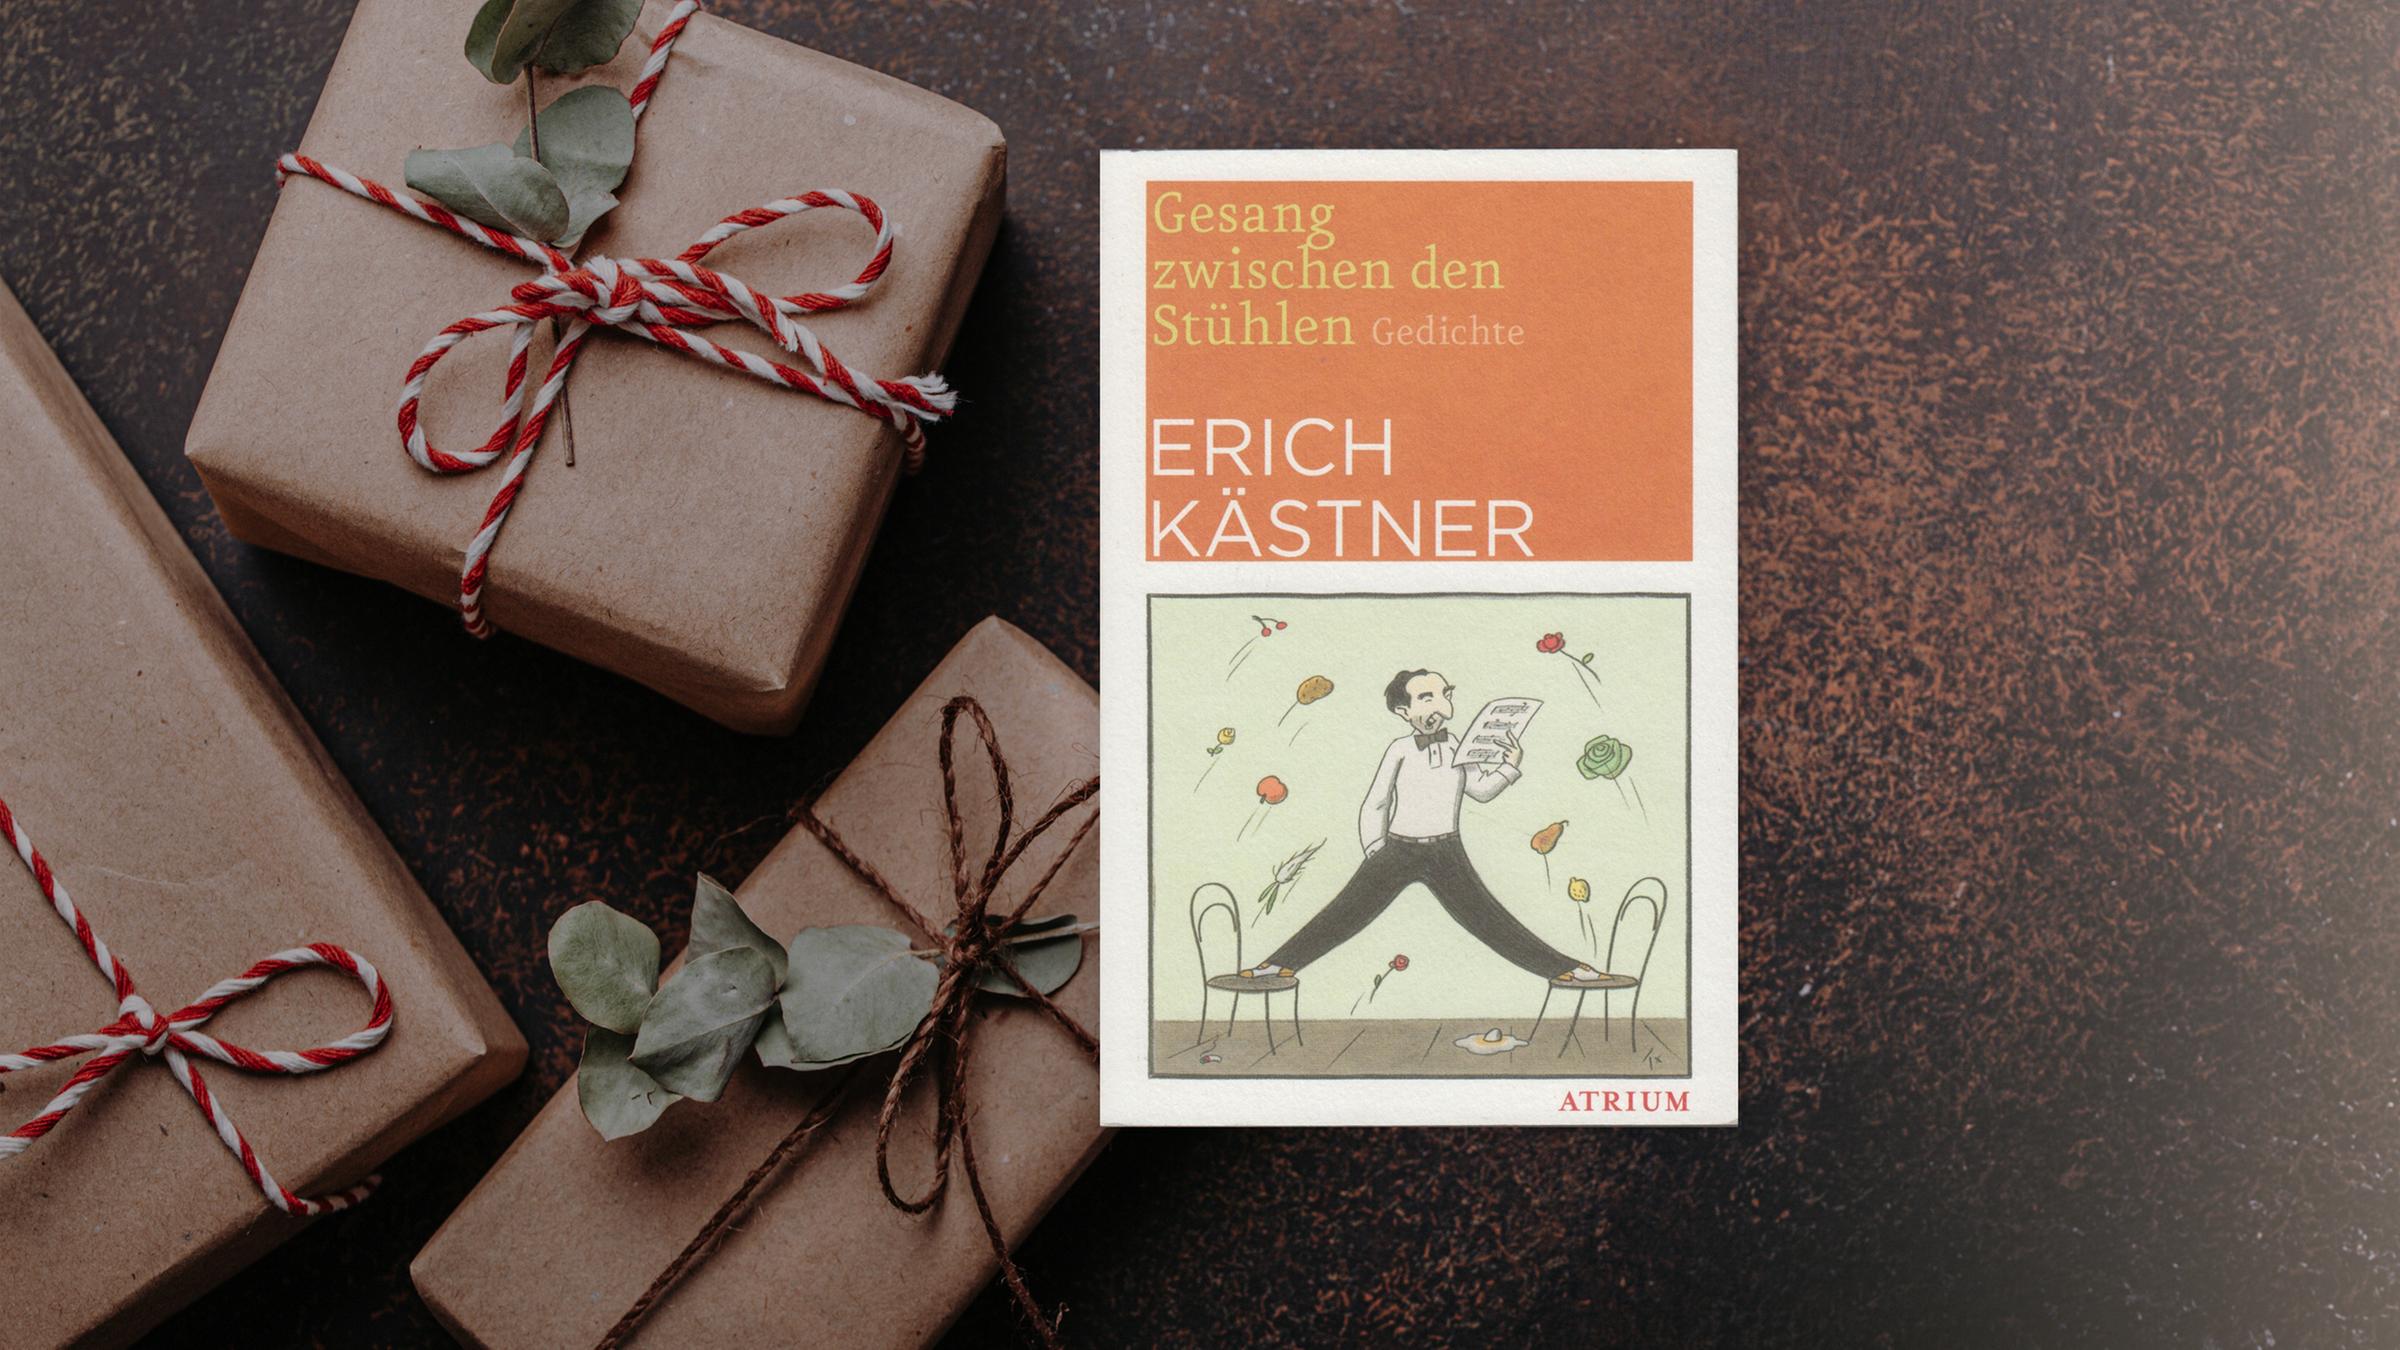 Buchcover von "Gesang zwischen den Stühlen" von Erich Kästner...</p>

                        <a href=